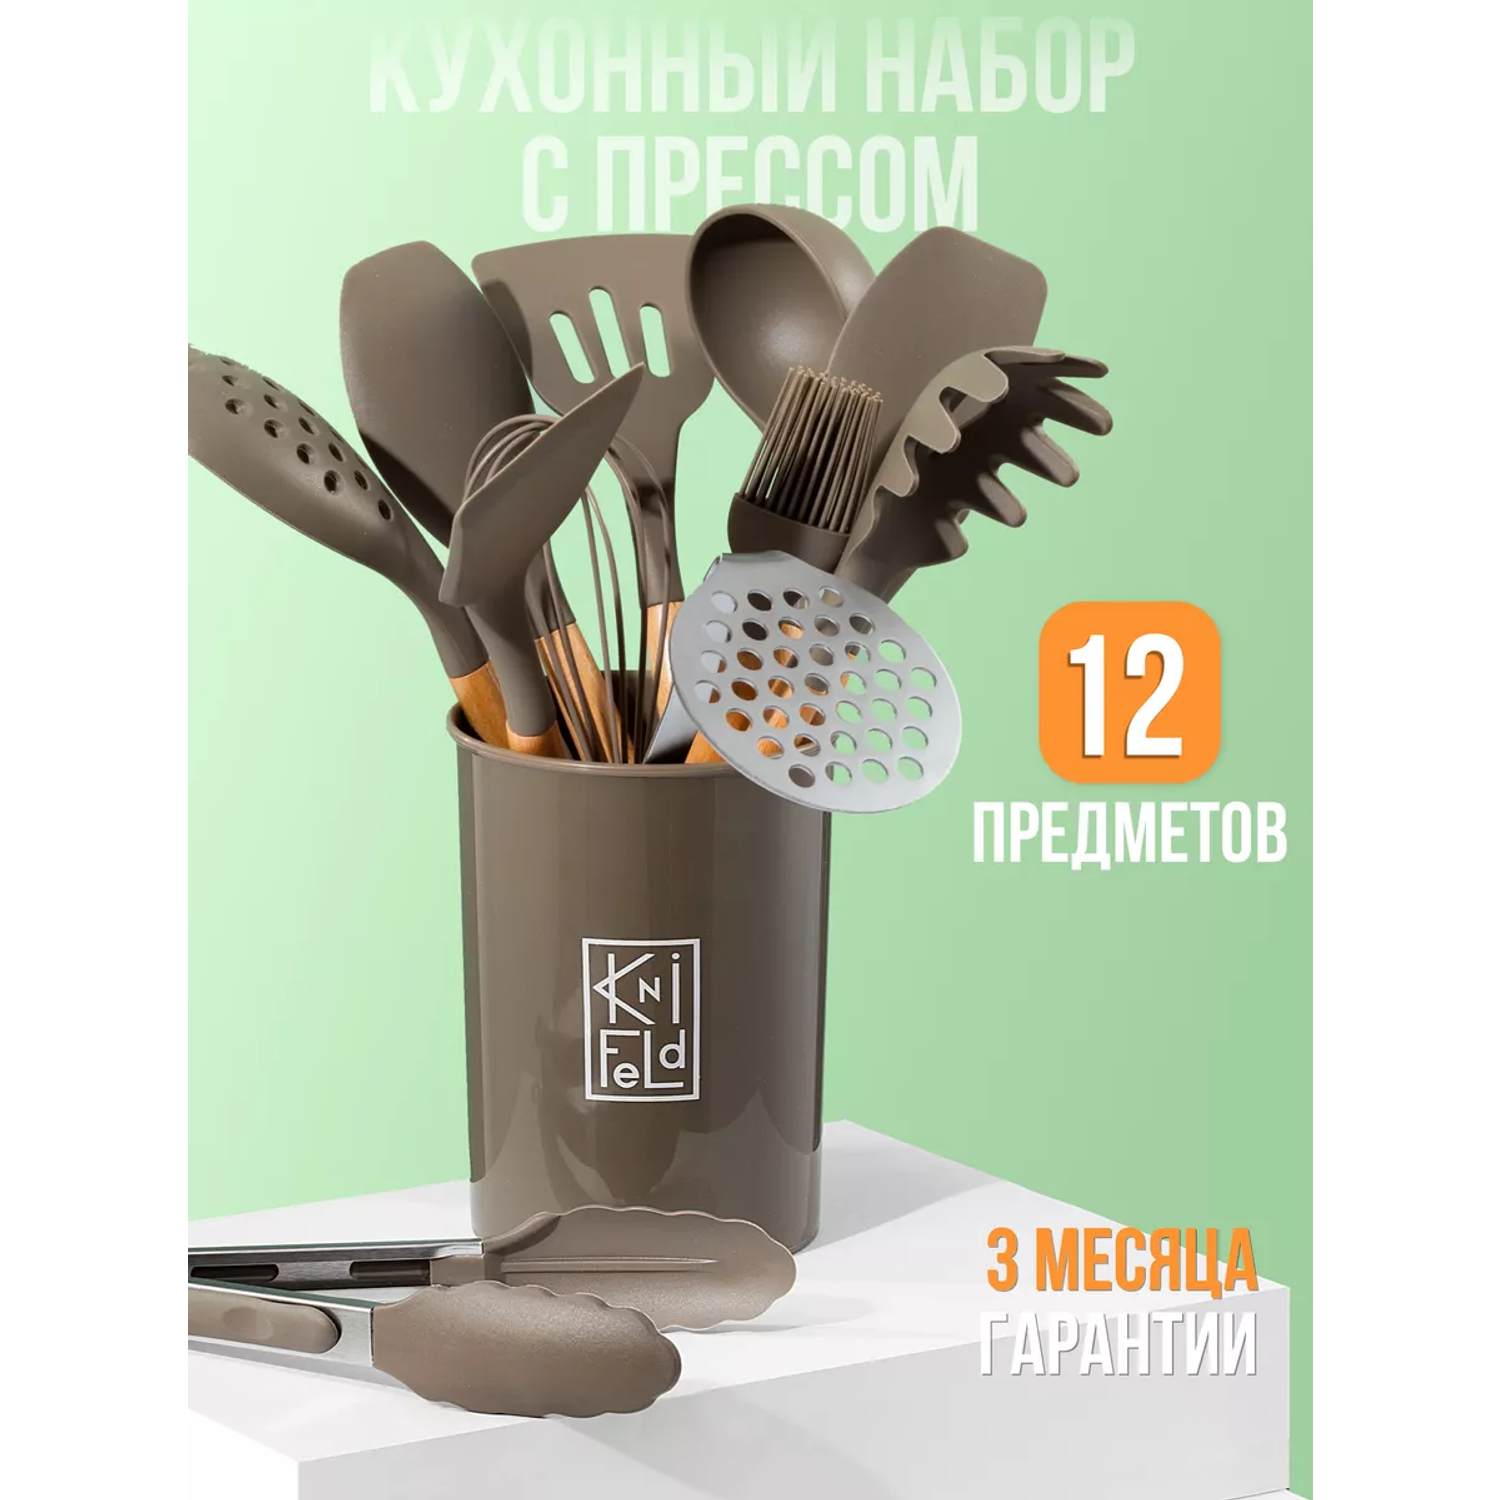 Набор кухонных принадлежностей Knifeld утварь для готовки 12 предметов - фото 1